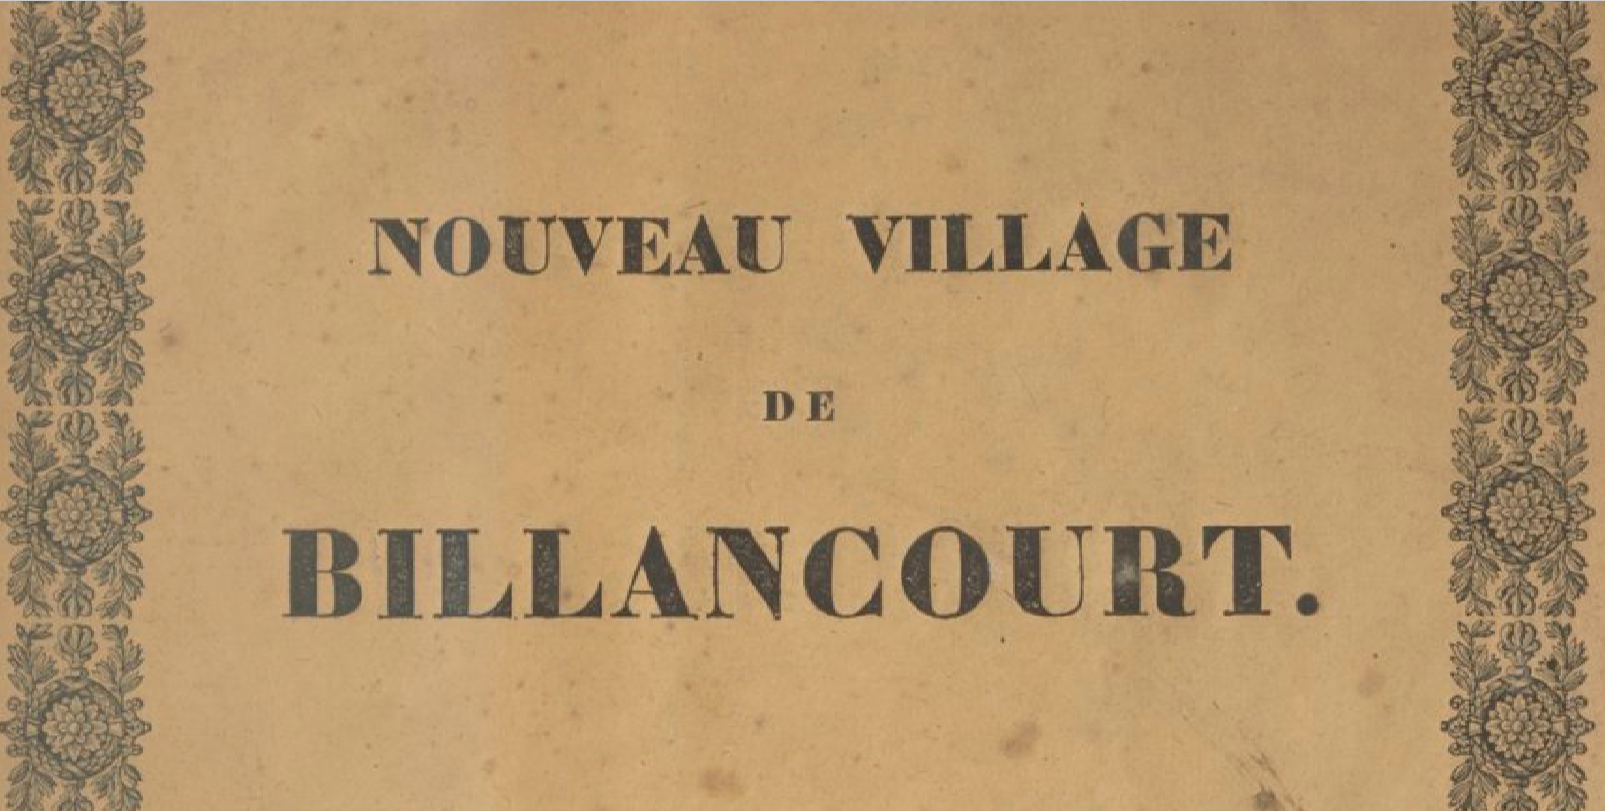 Extrait du "Nouveau Village de Billancourt".